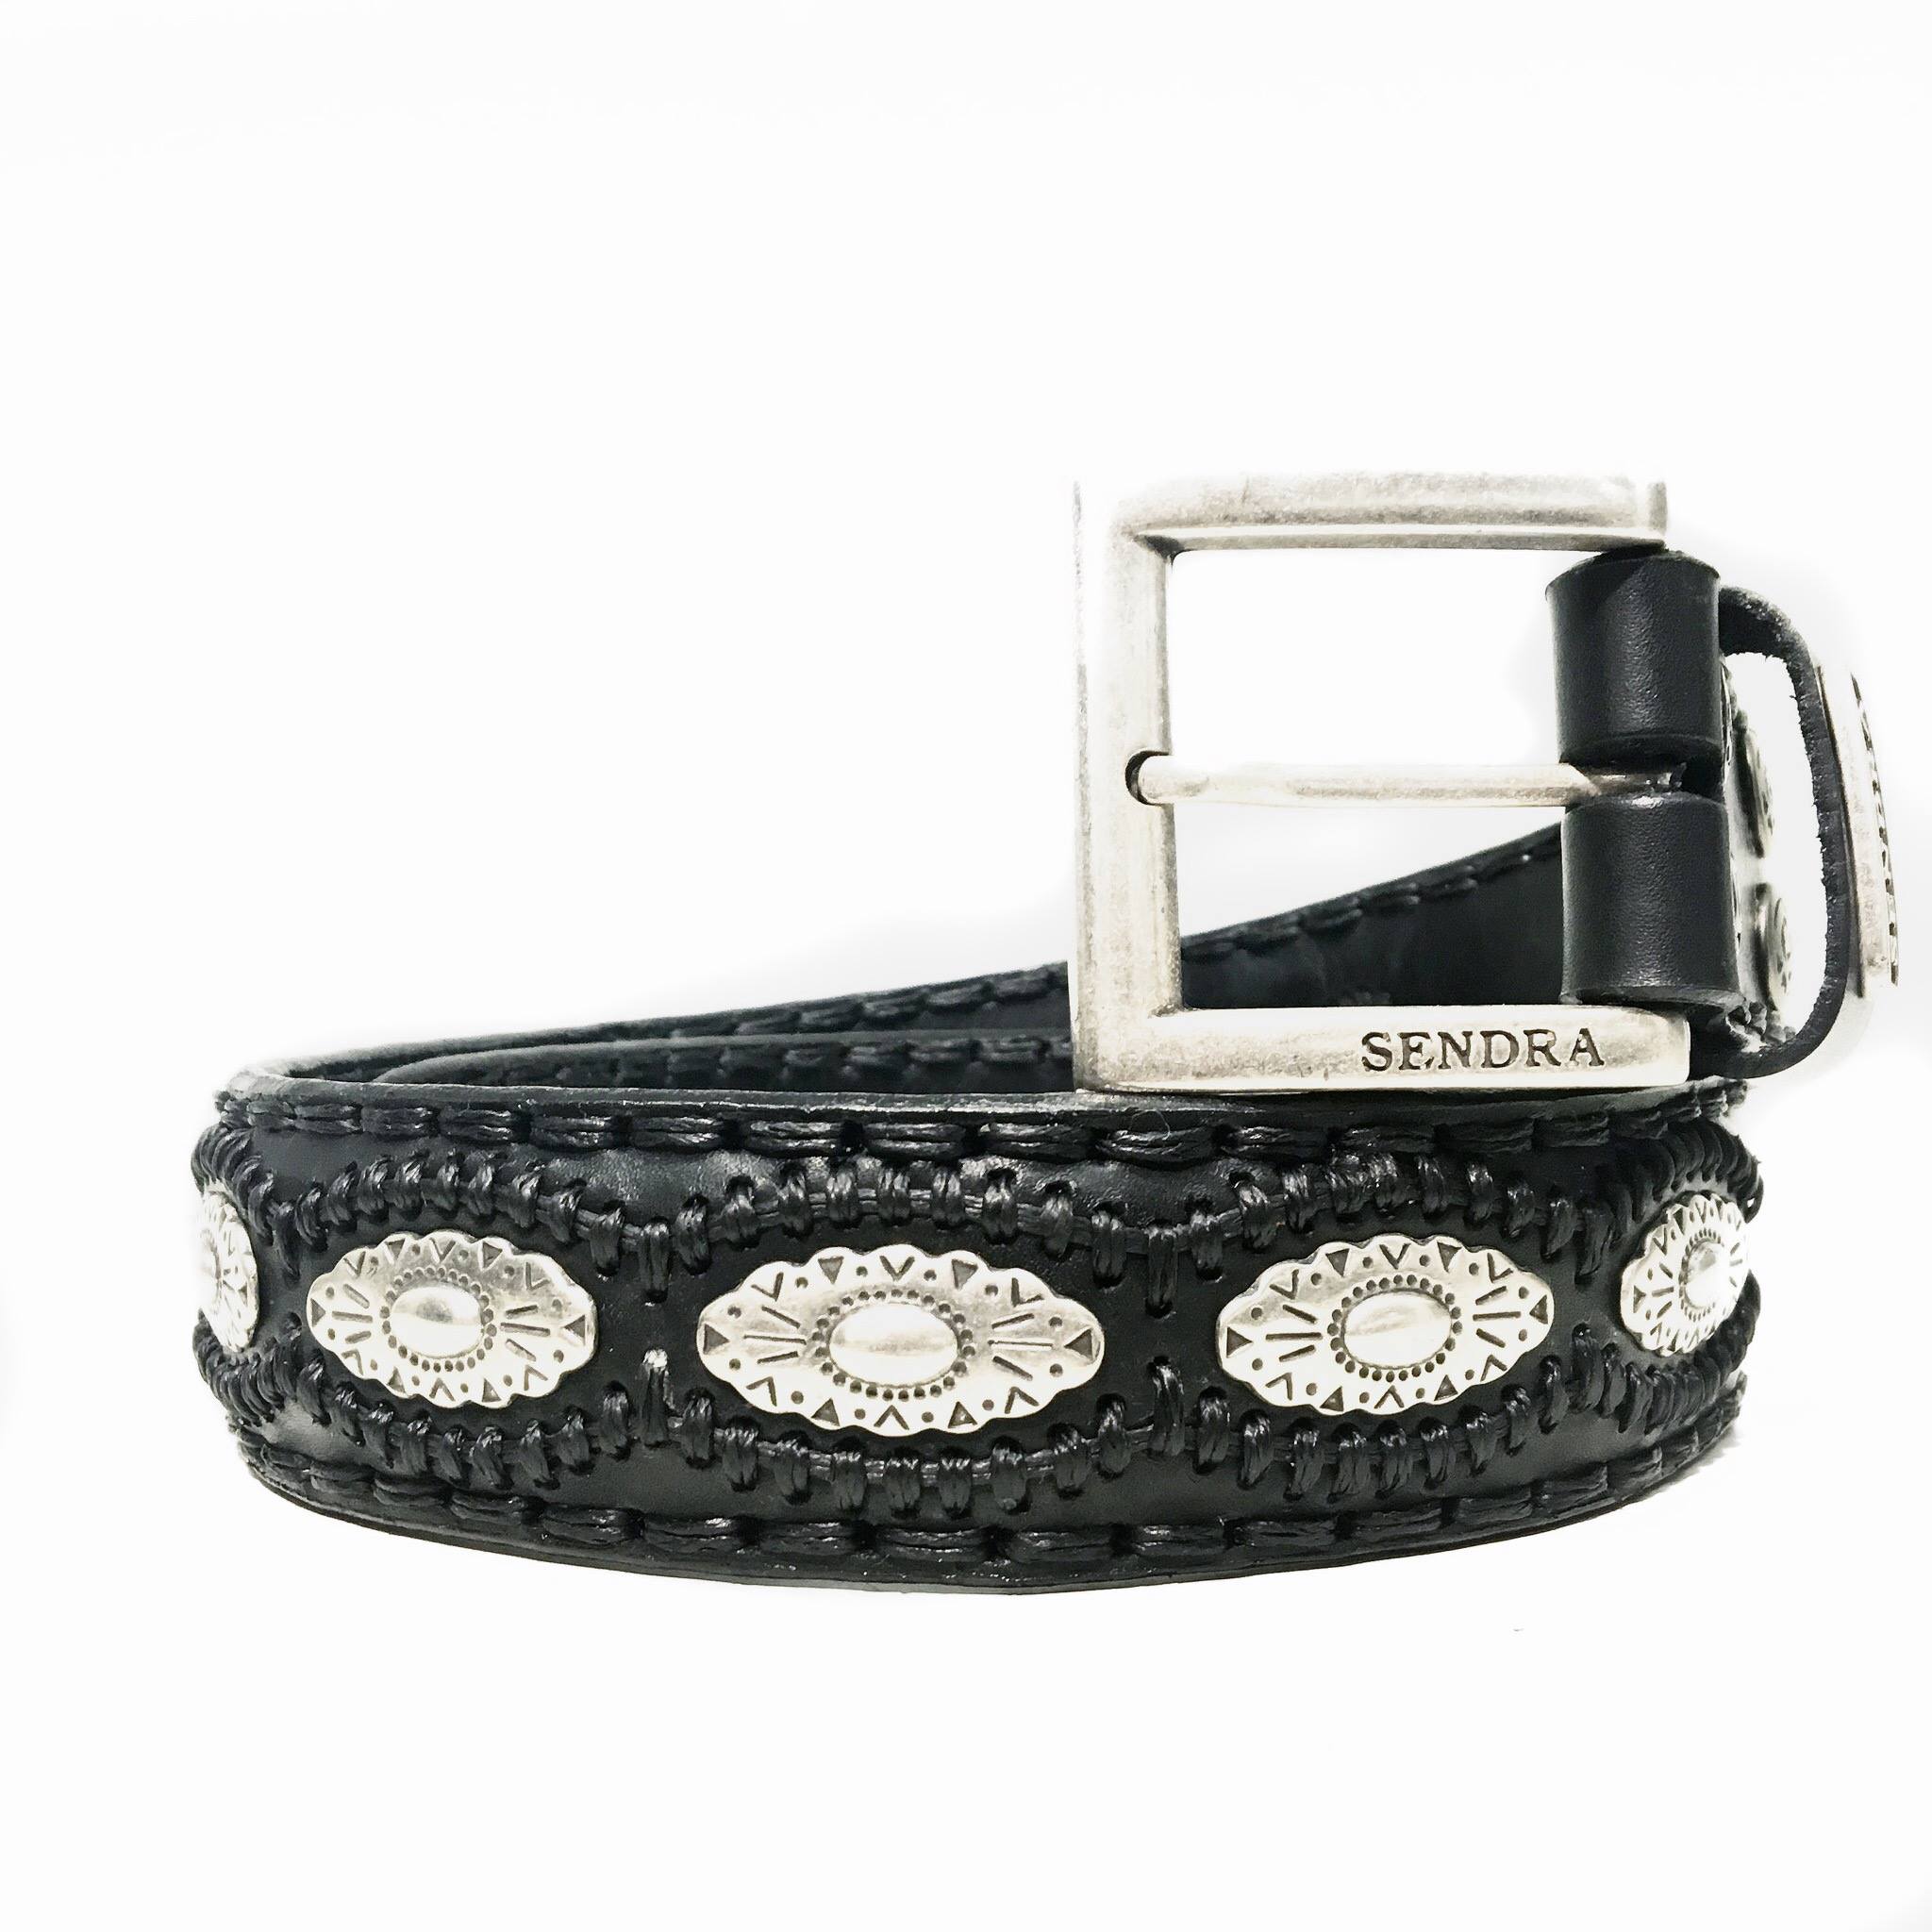 Sendra belt - 7606 zwart/zwart zilver